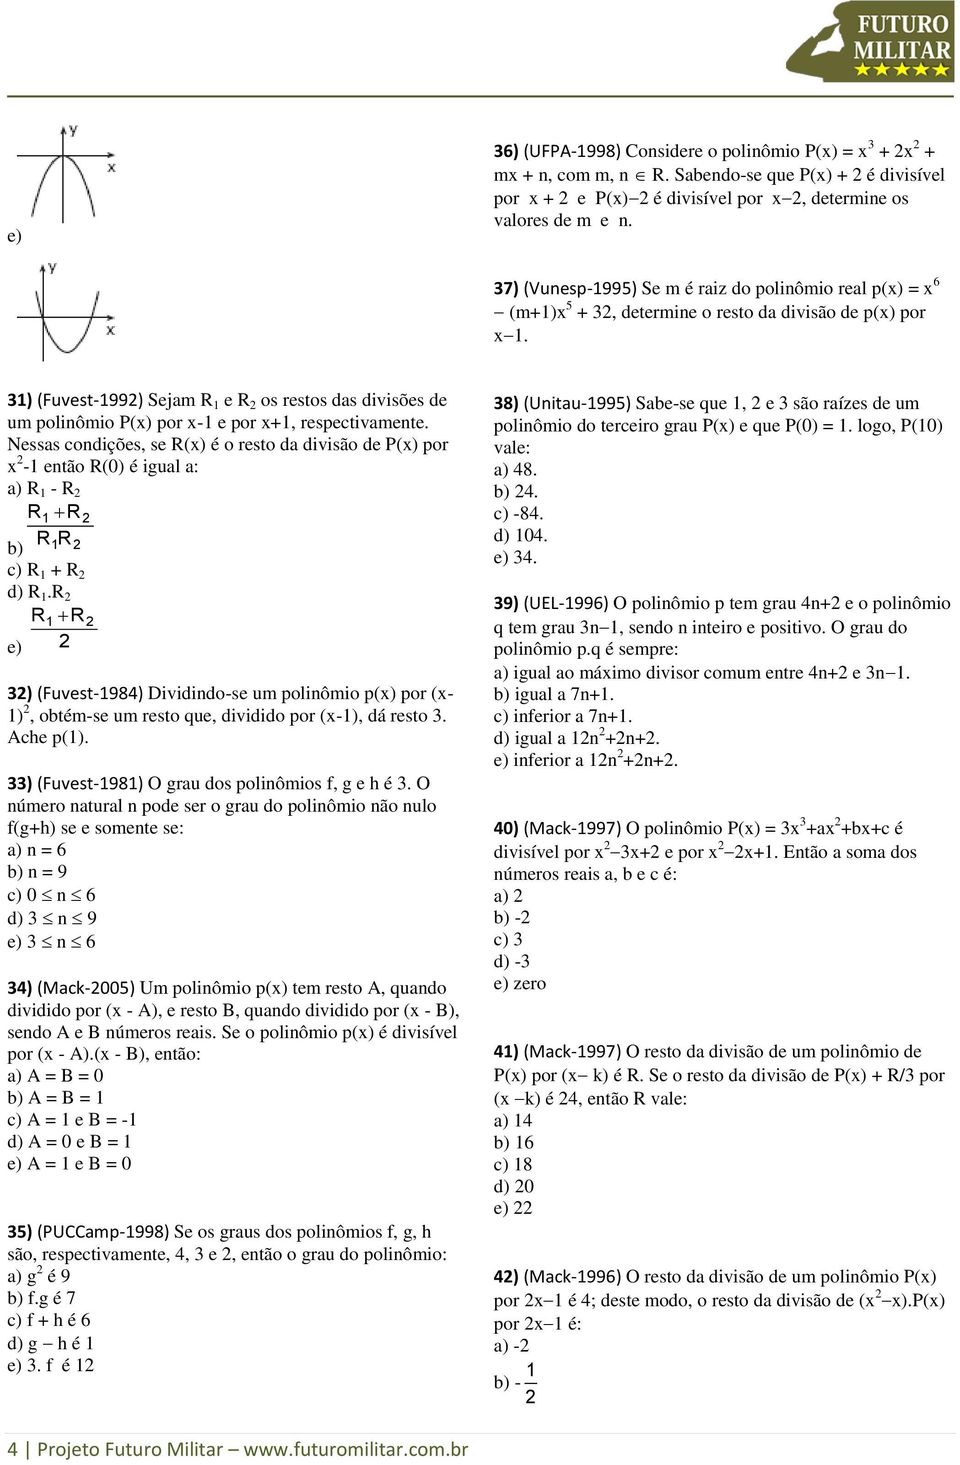 3) (Fuvest-99) Sejam R e R os restos das divisões de um poliômio P(x) por x- e por x+, respectivamete.